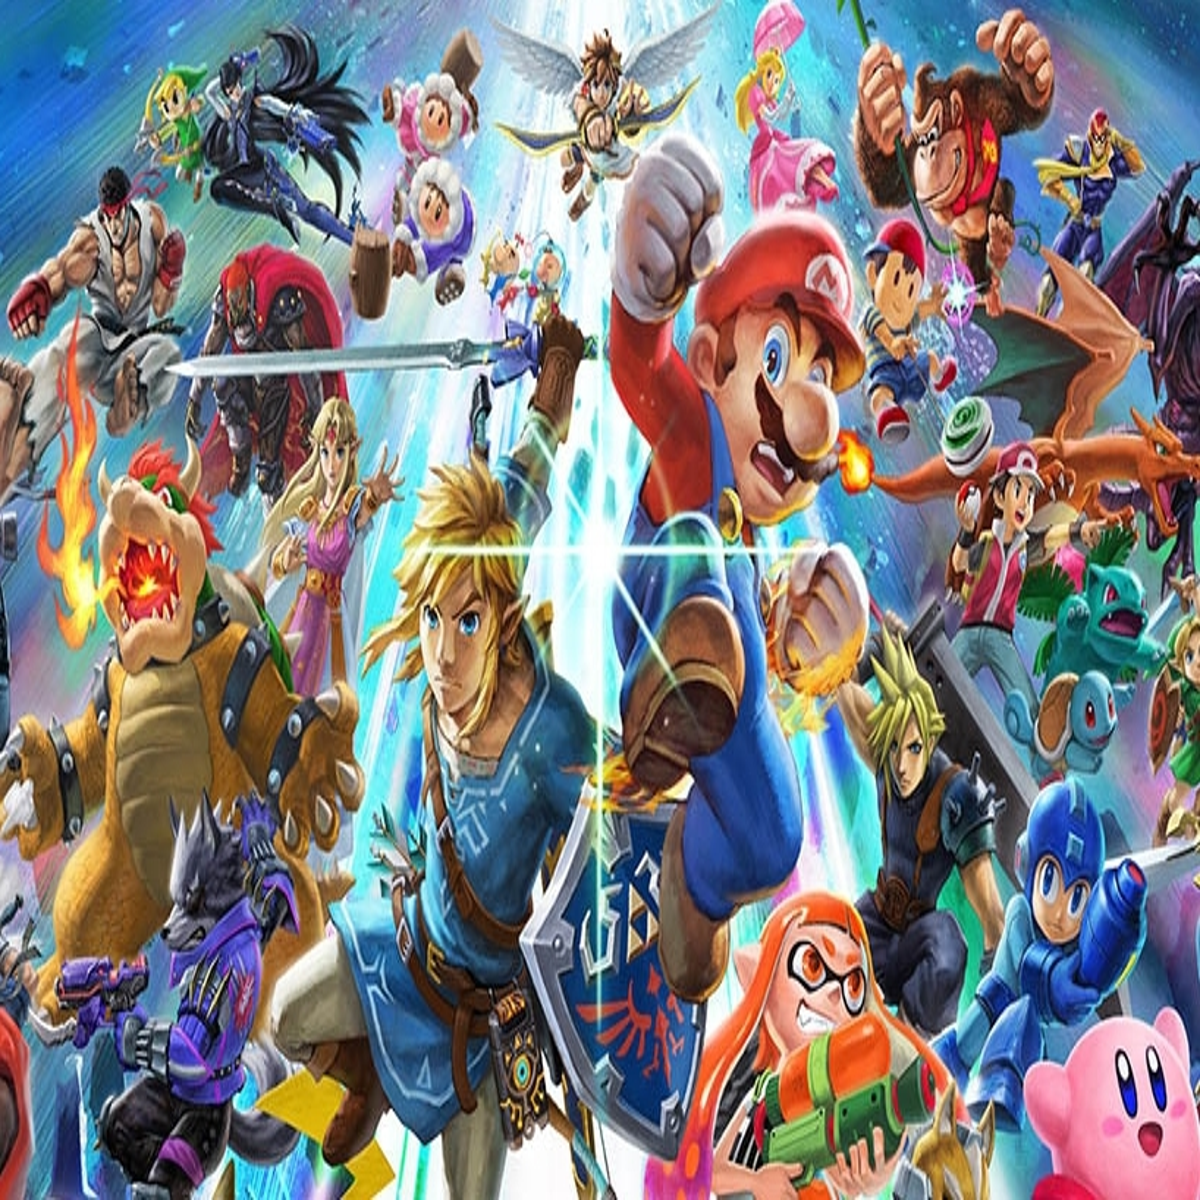 Bowser Super Smash Bros Ultimate Guide - Unlock, Moves, Changes, Bowser  Alternate Costumes, Final Smash